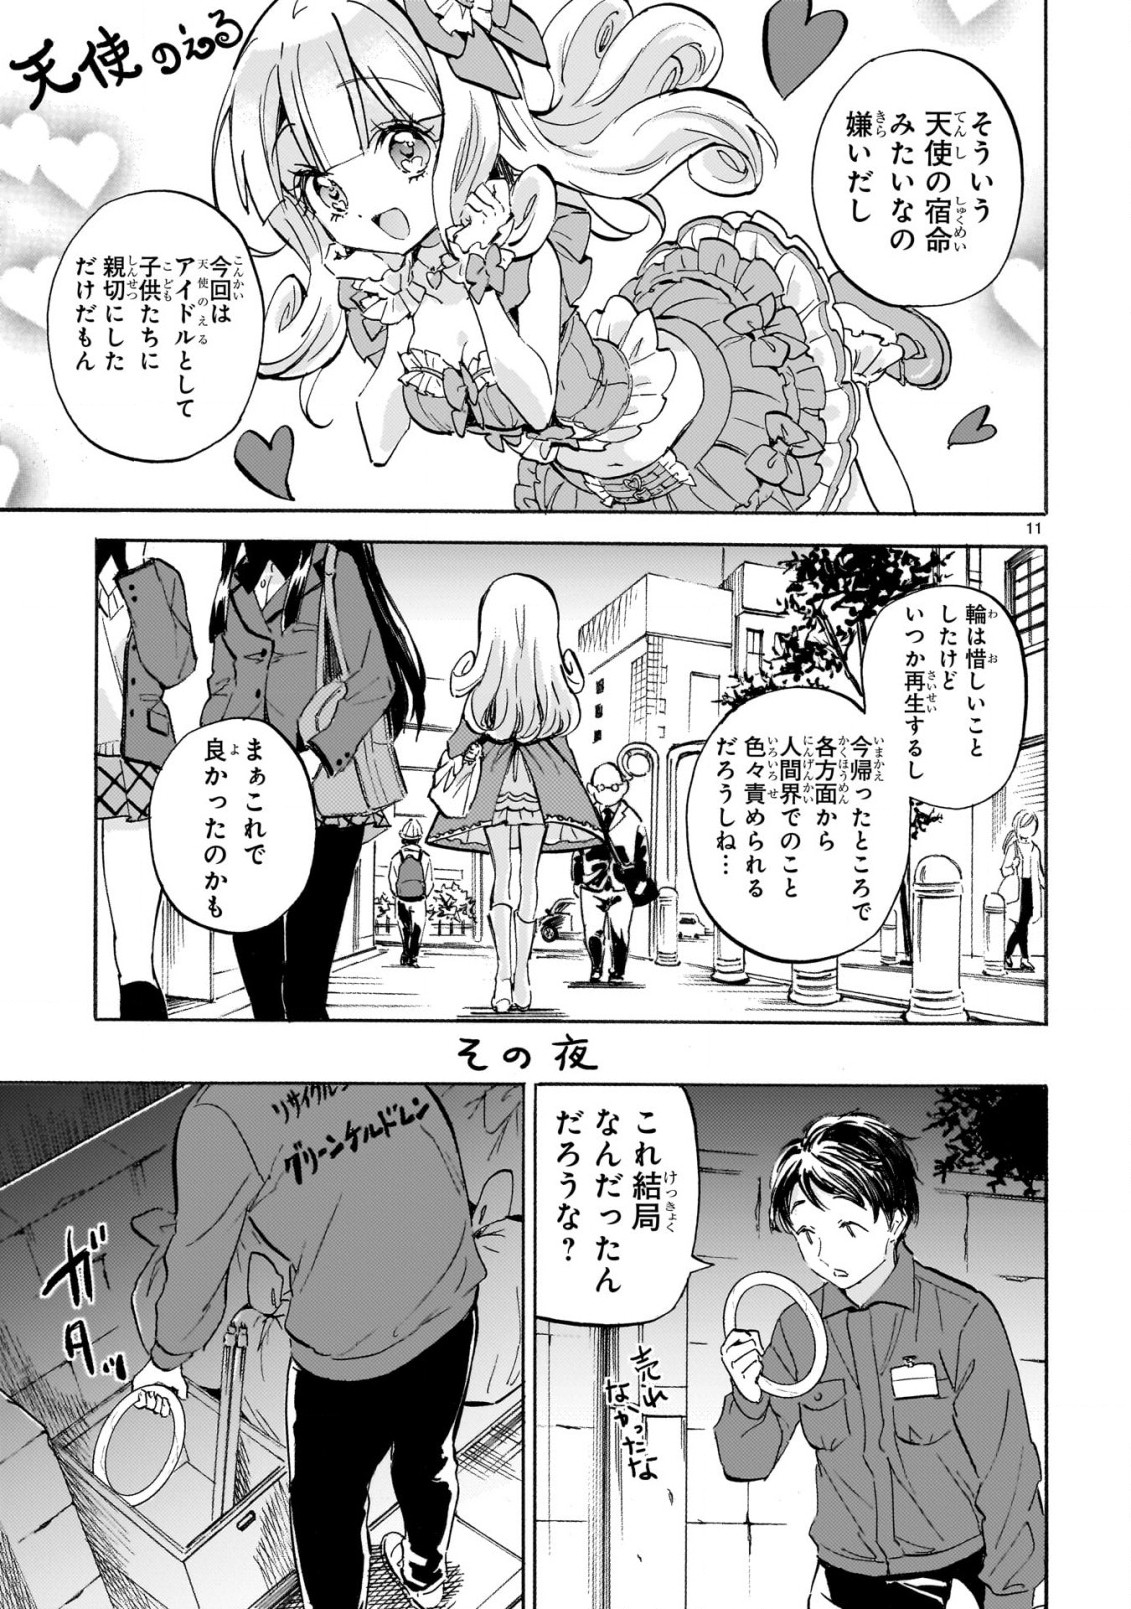 Jashin-chan Dropkick - Chapter 228 - Page 11